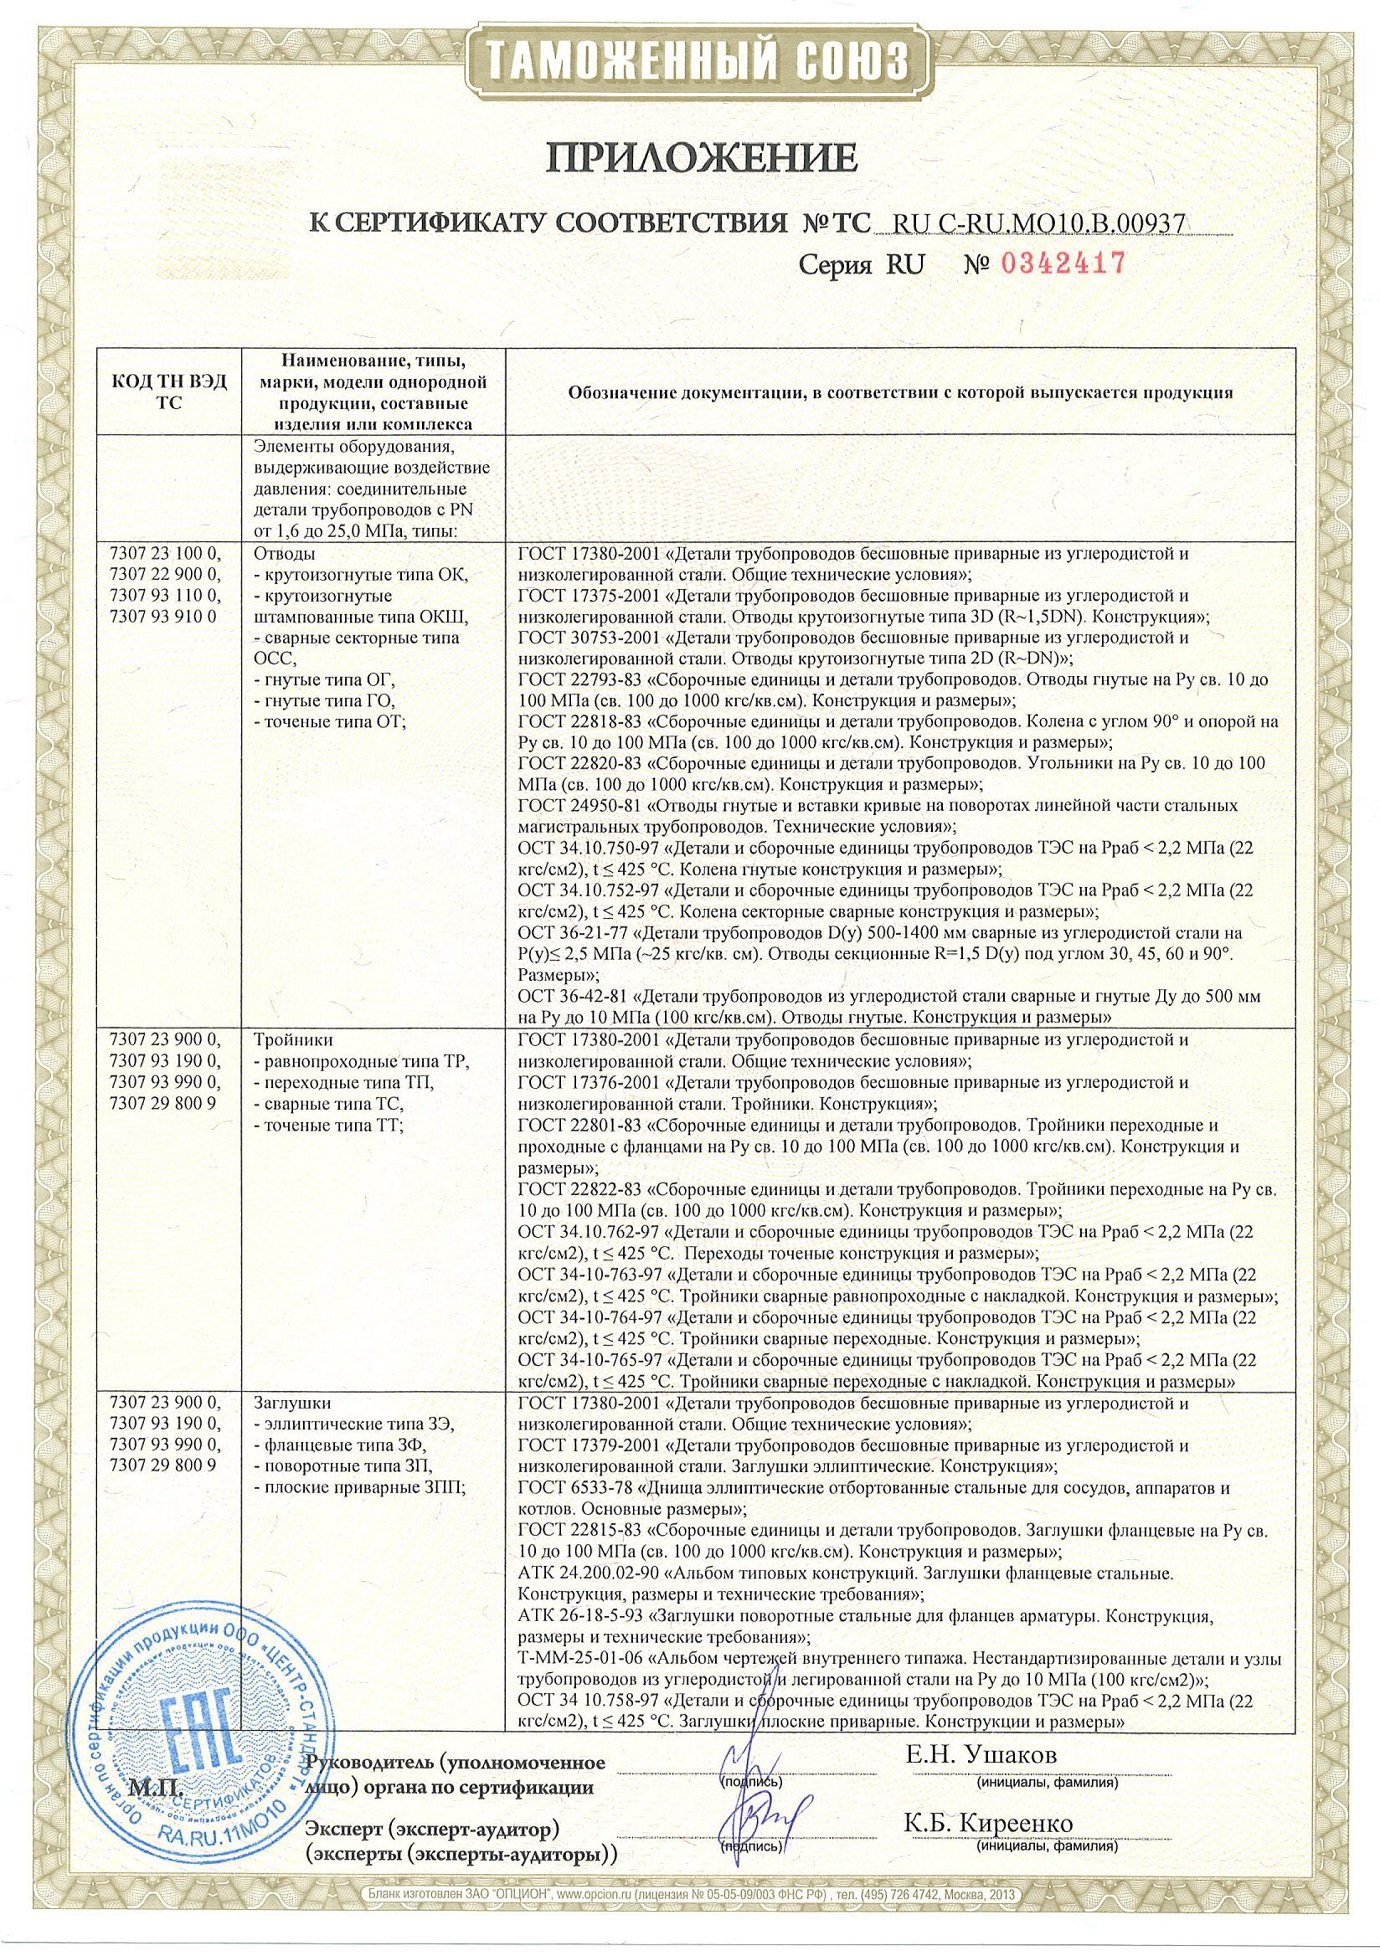 Приложение 1 к сертификату соответствия ТР ТС